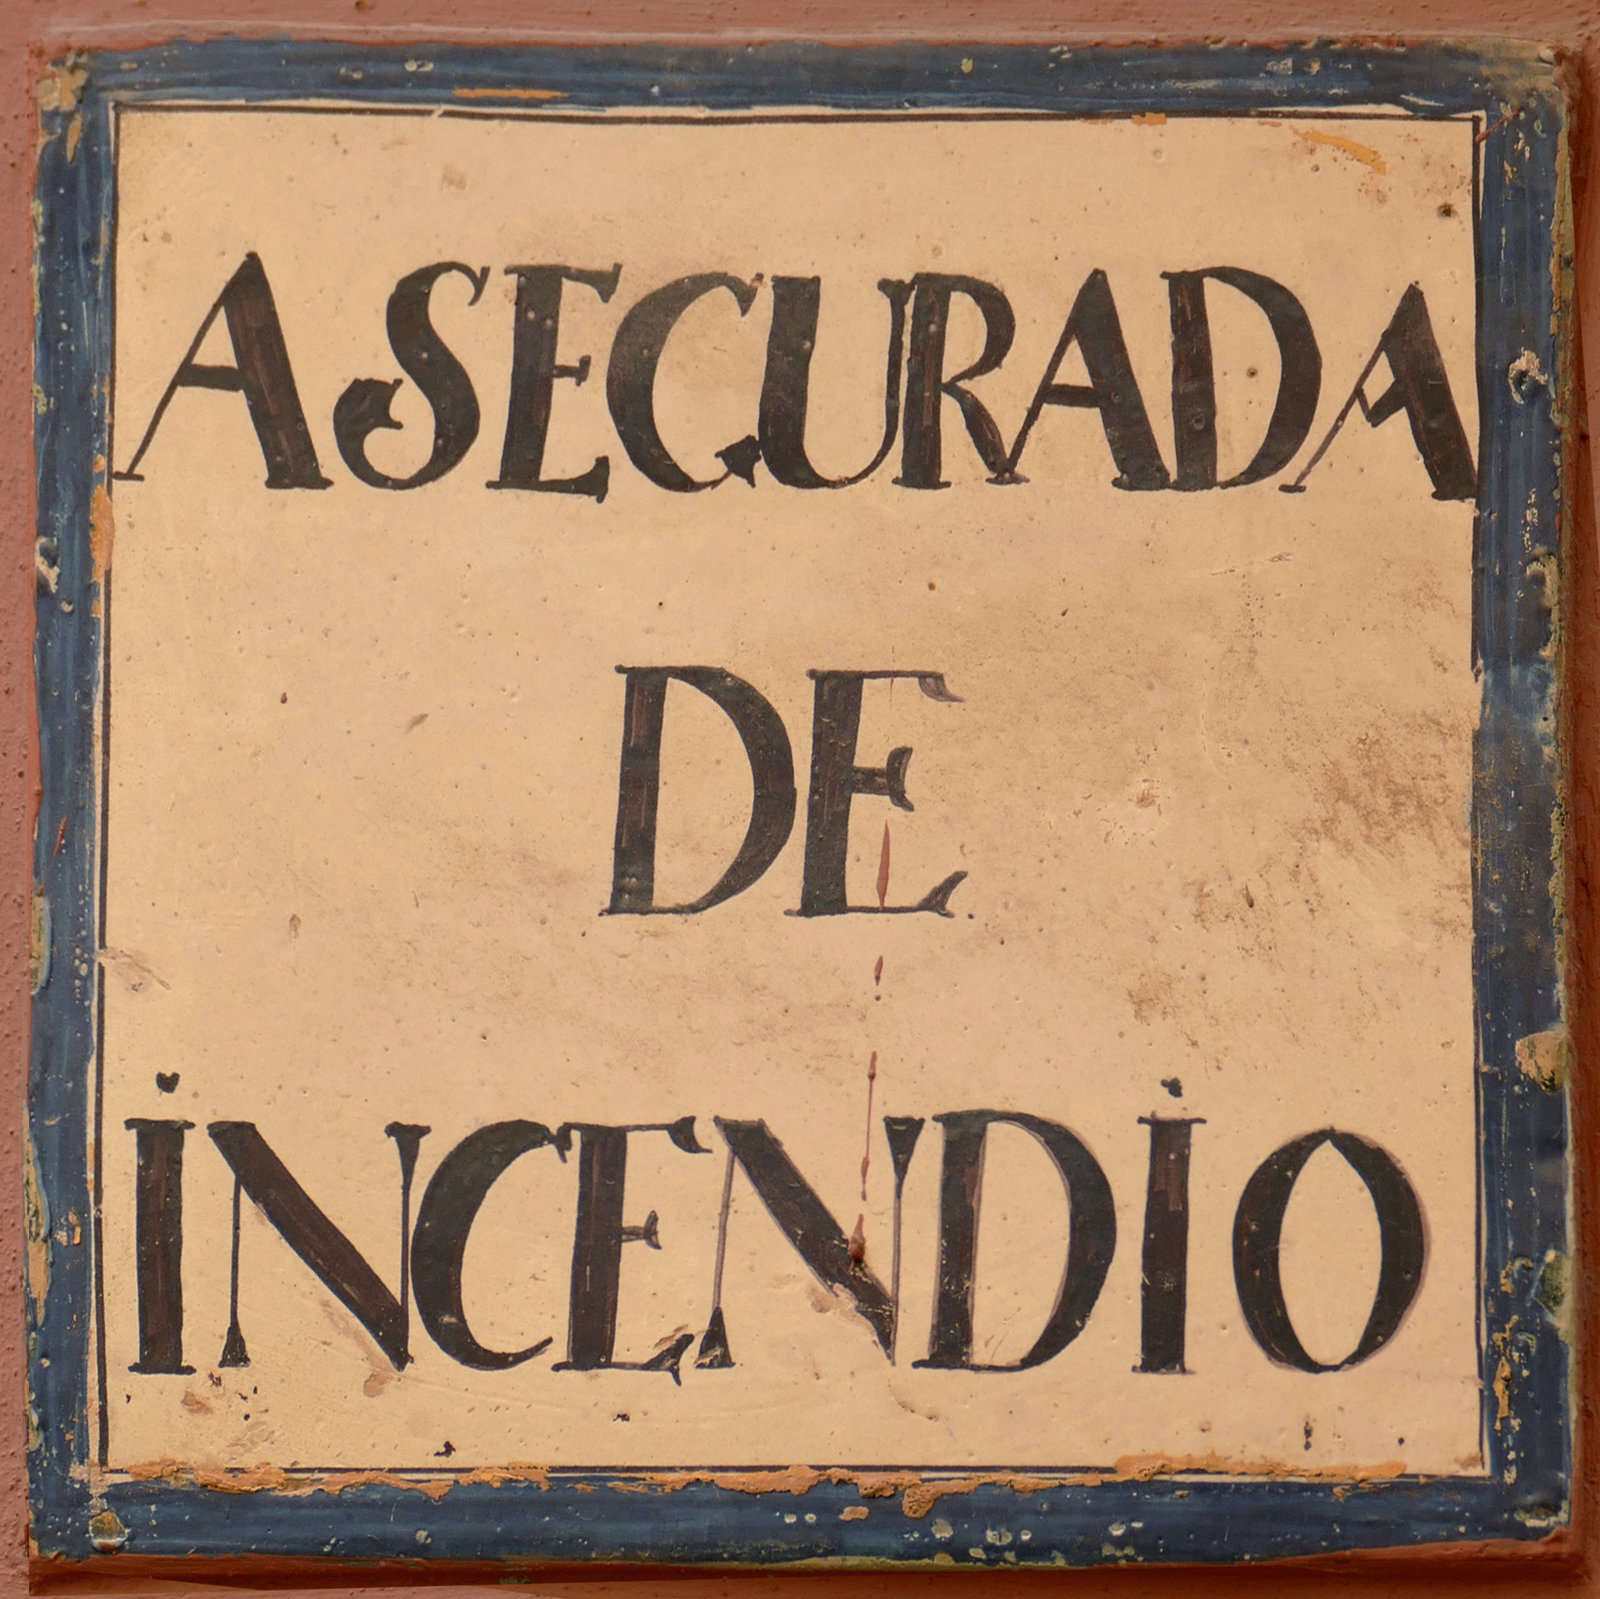 00993. Placa de asegurada de incendios. Sevilla.